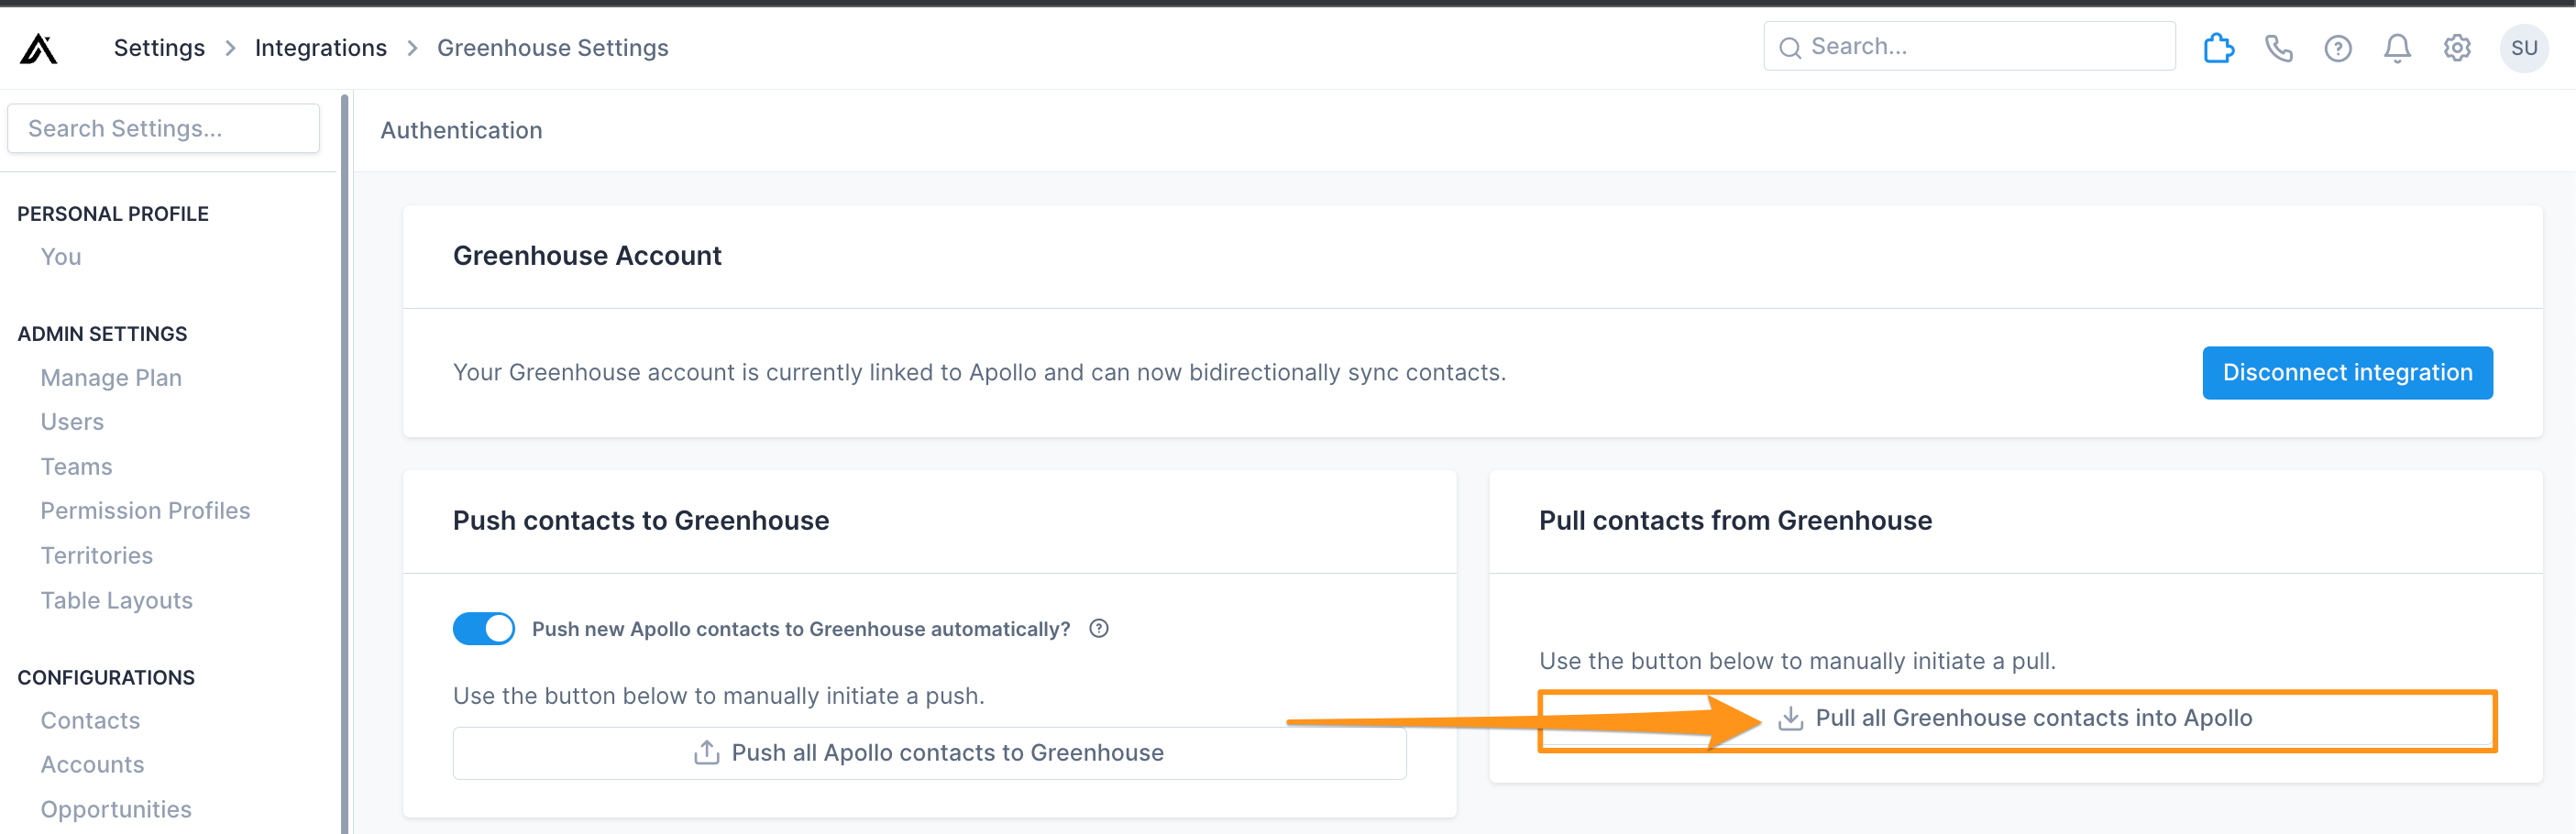 Pull all Greenhouse contacts in Apollo button in Apollo settings